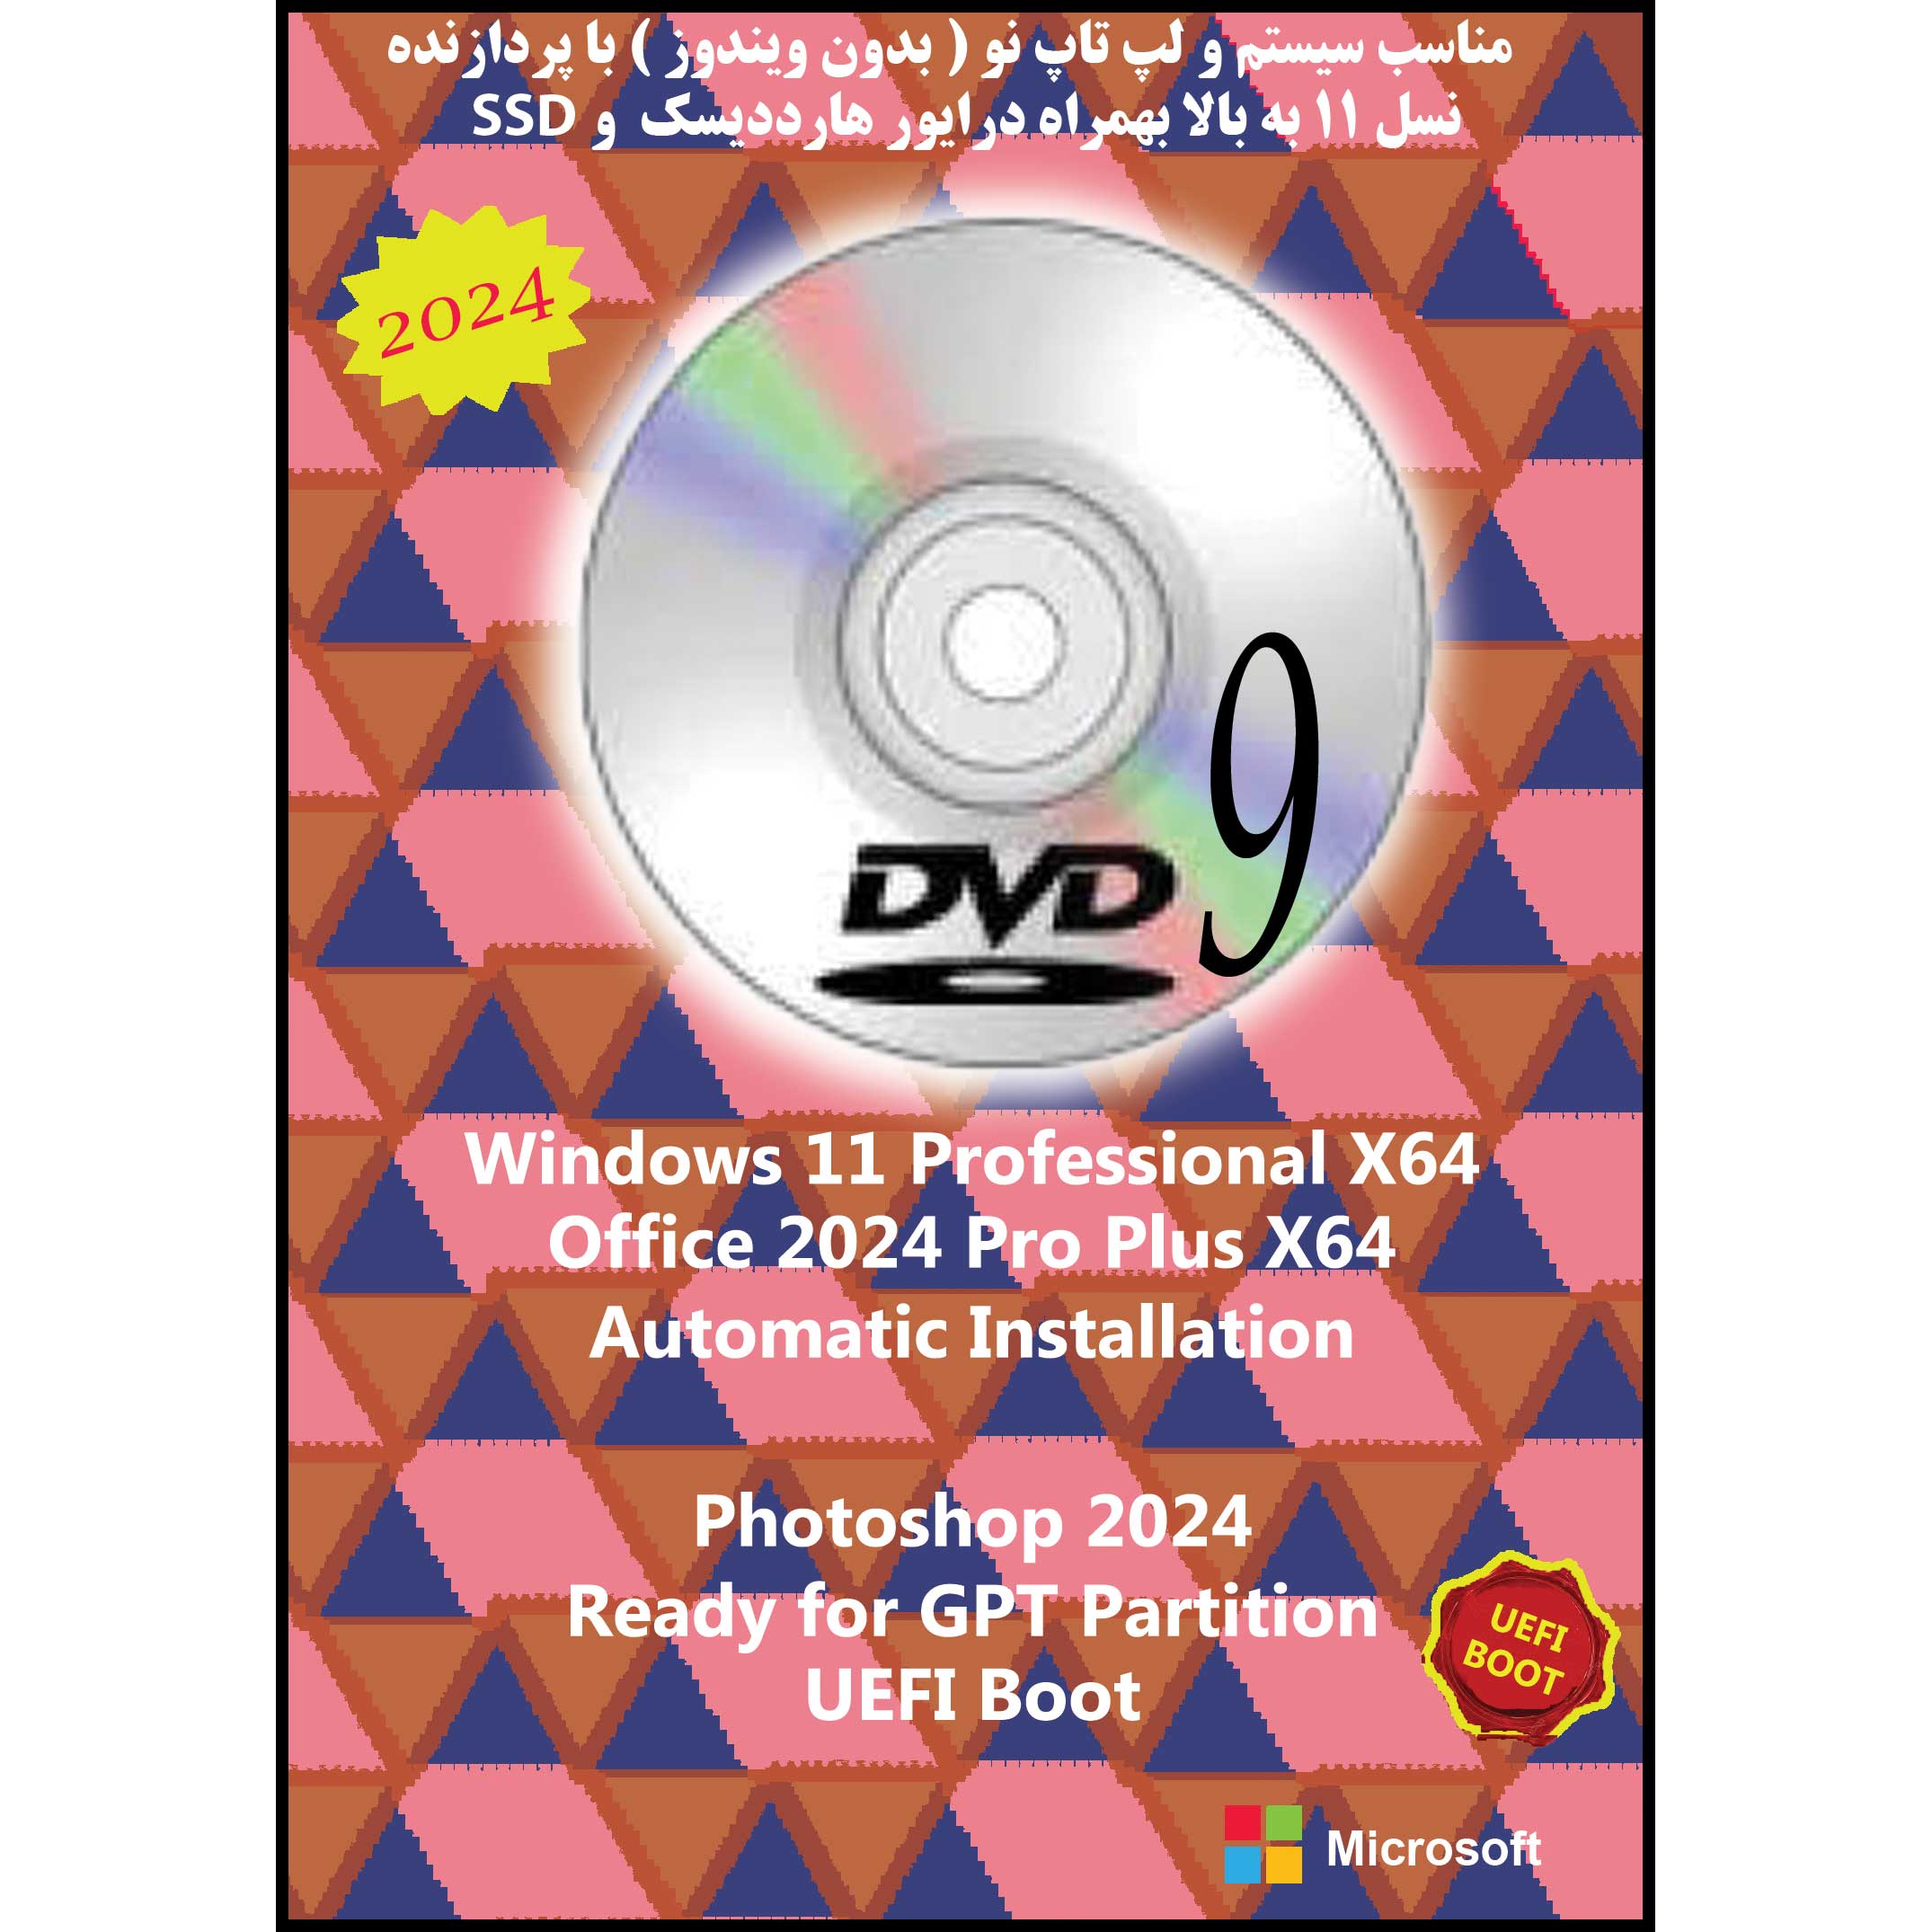 سیستم عامل Windows 11 Pro X64 2024 DVD9 UEFI - Photoshop 2024 - Office 2024 Pro Plus نشر مایکروسافت